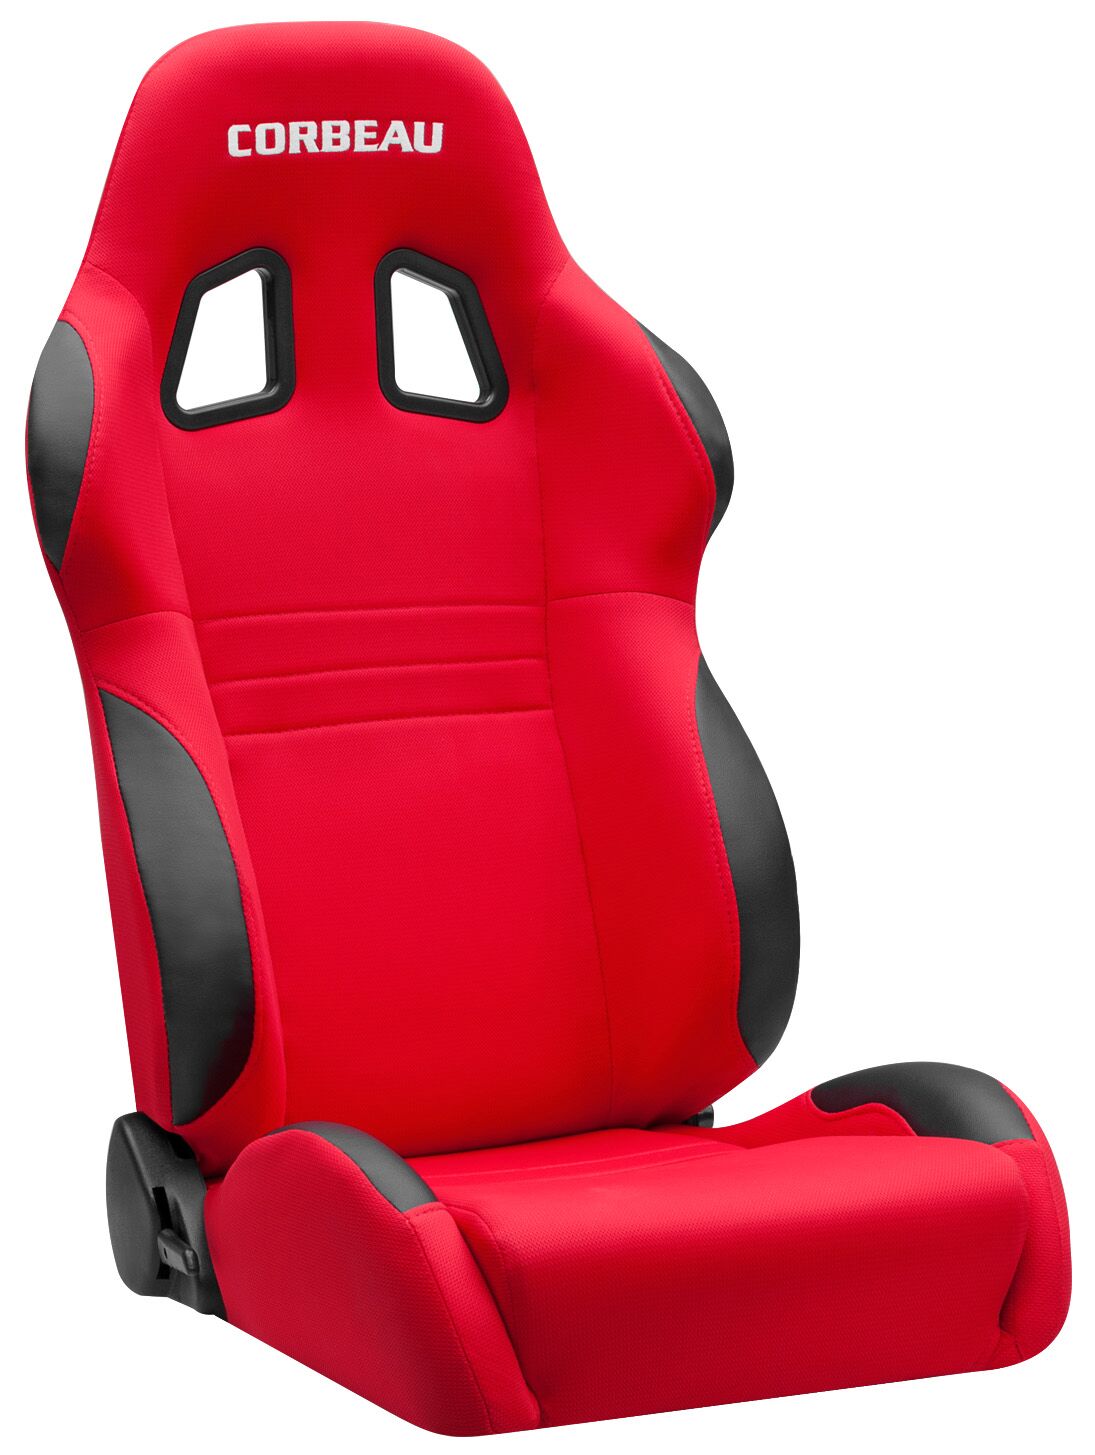 Corbeau A4 Seats - Red Cloth